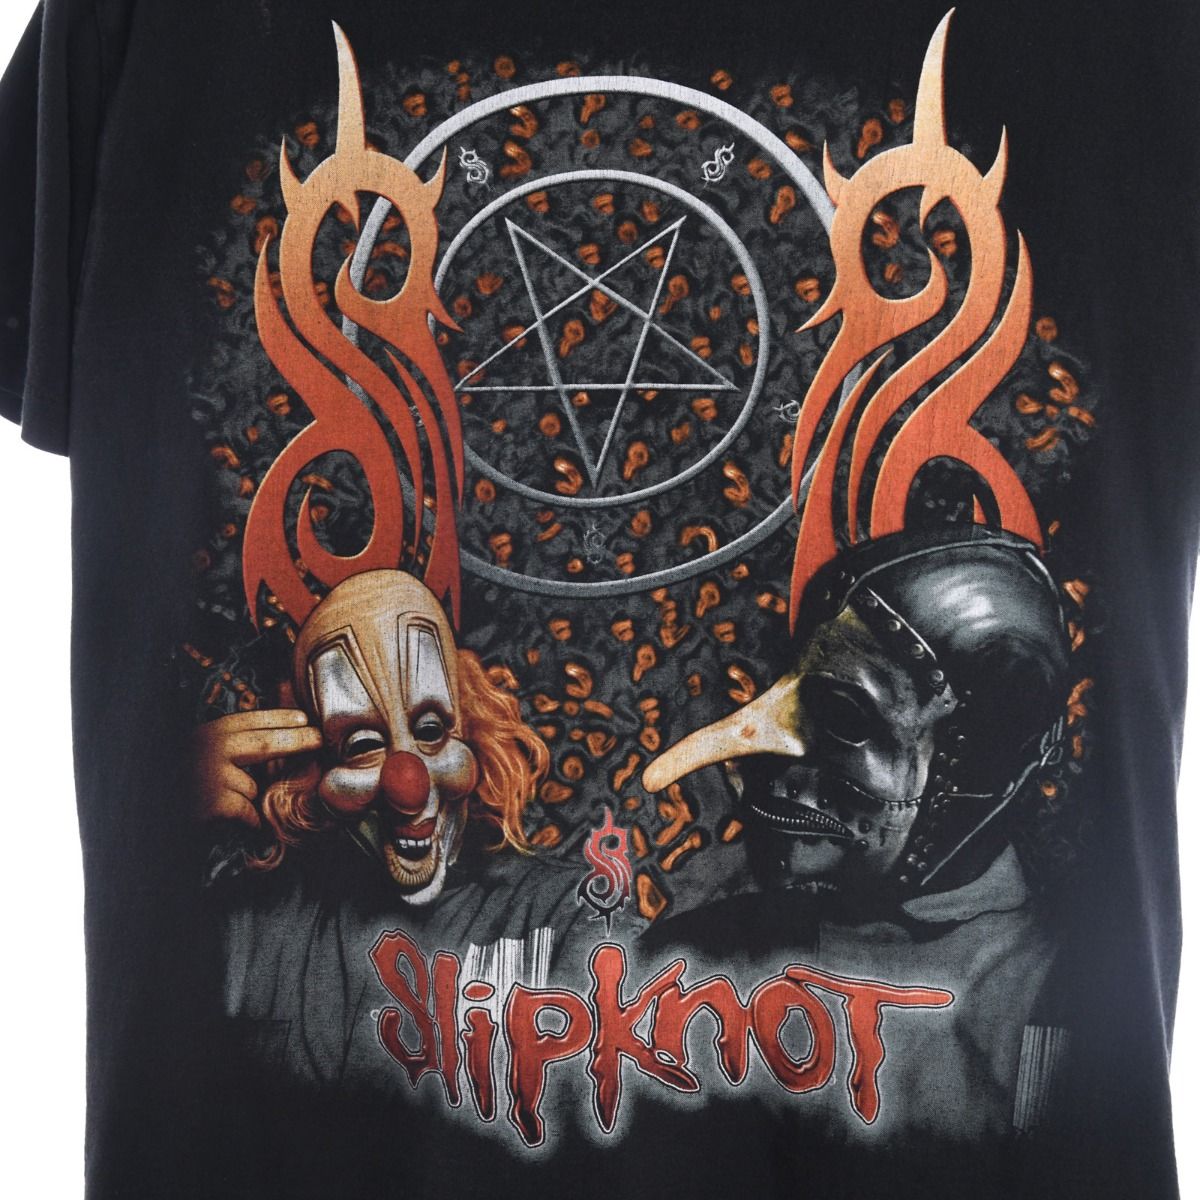 Slipknot 1999 Bootleg T-Shirt